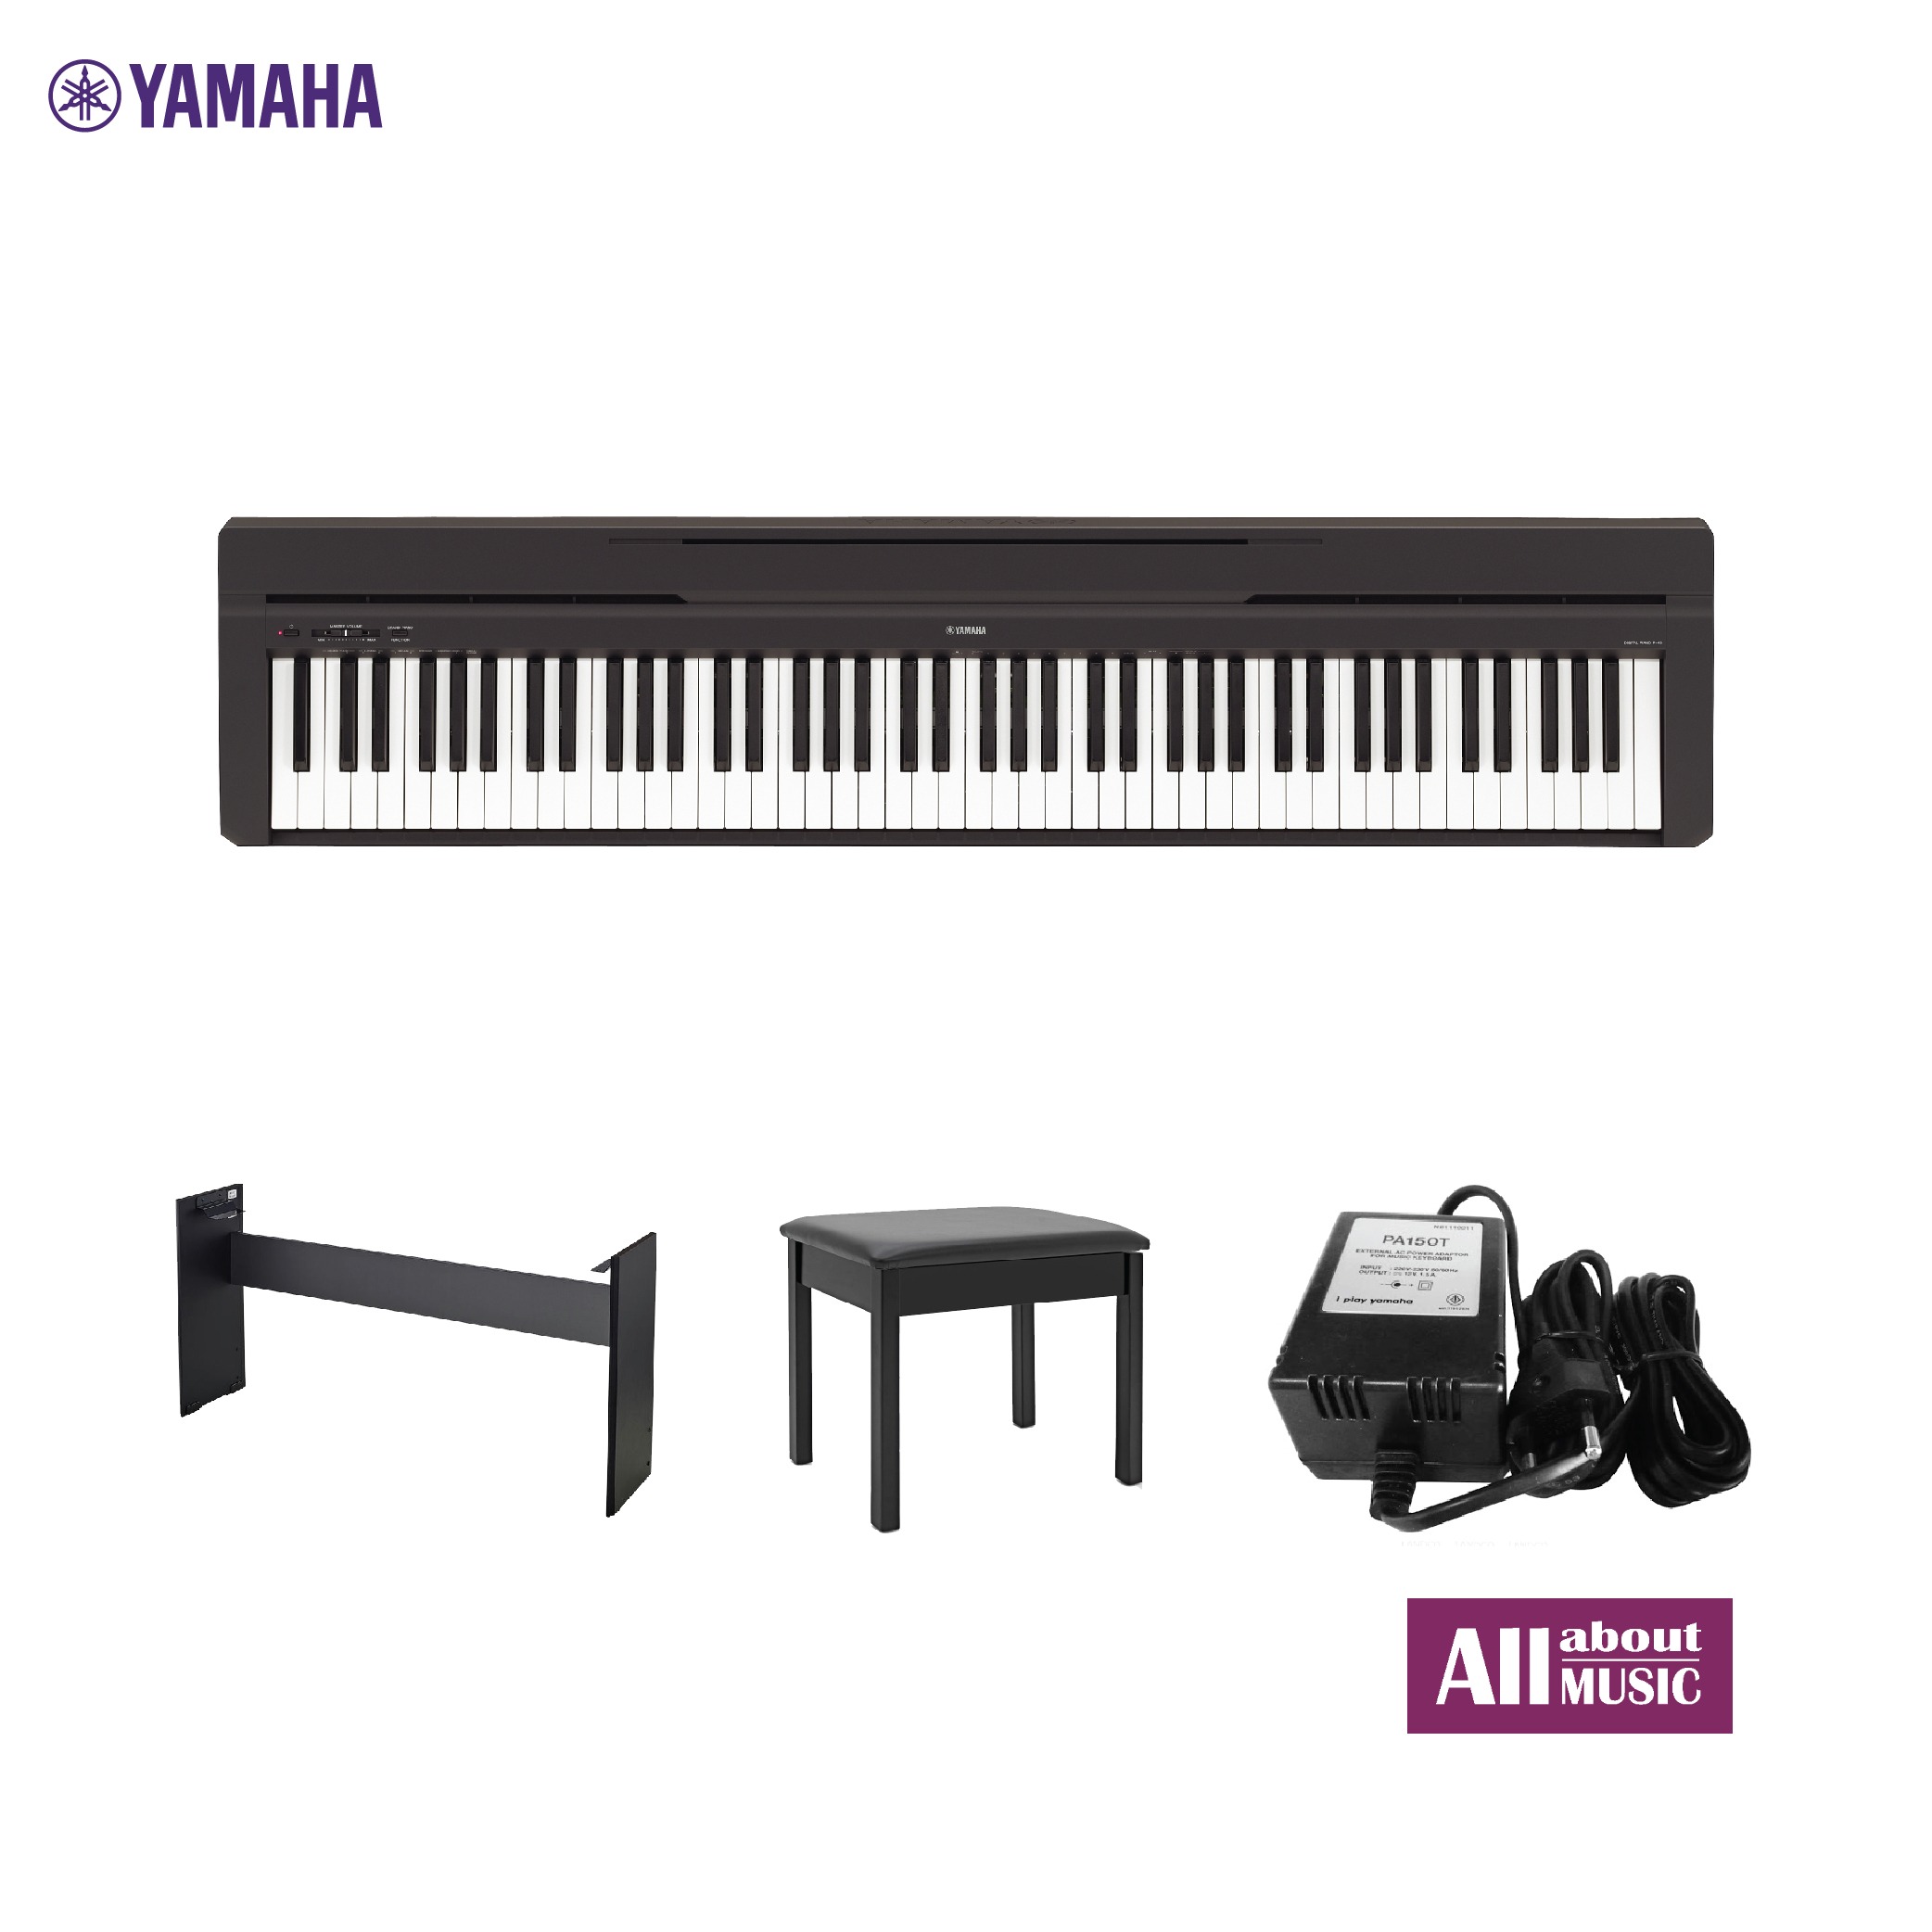 YAMAHA P-45 (Black Color) Digital Piano I เปียโนไฟฟ้ายามาฮ่า รุ่น P-45B สีดำ ดิจิตอลเปียโนไซส์พกพารุ่นเริ่มต้น